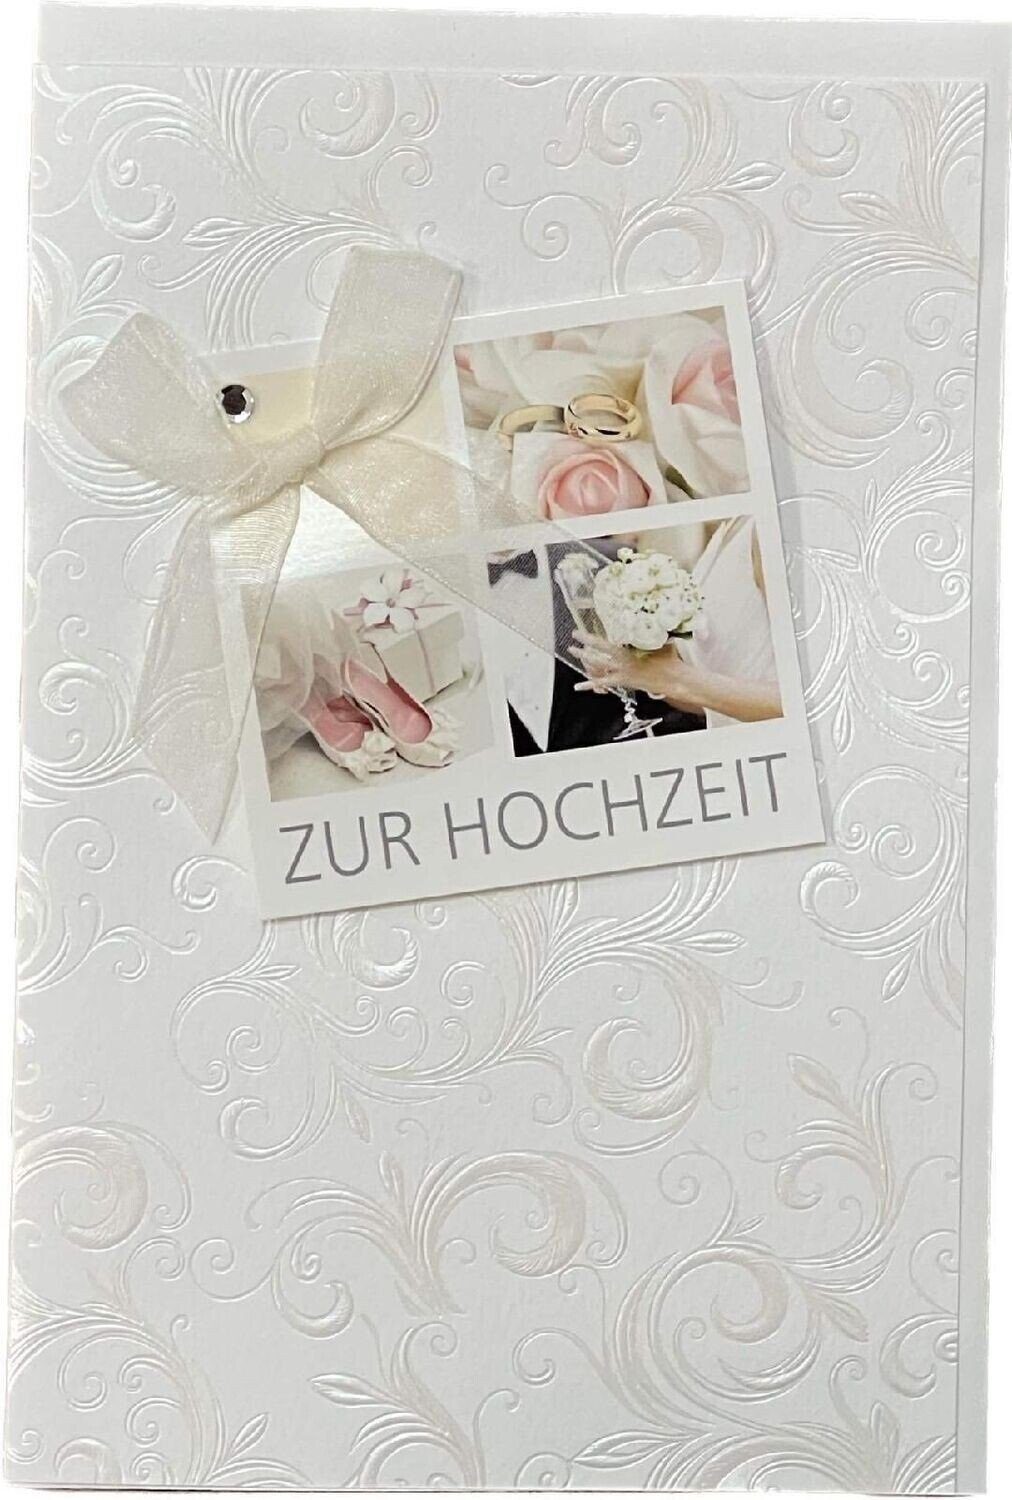 HOME FASHION Hochzeitskarte Umschlag Hochzeitskarte, - Hochzeit Zur Grußkarte inklusive